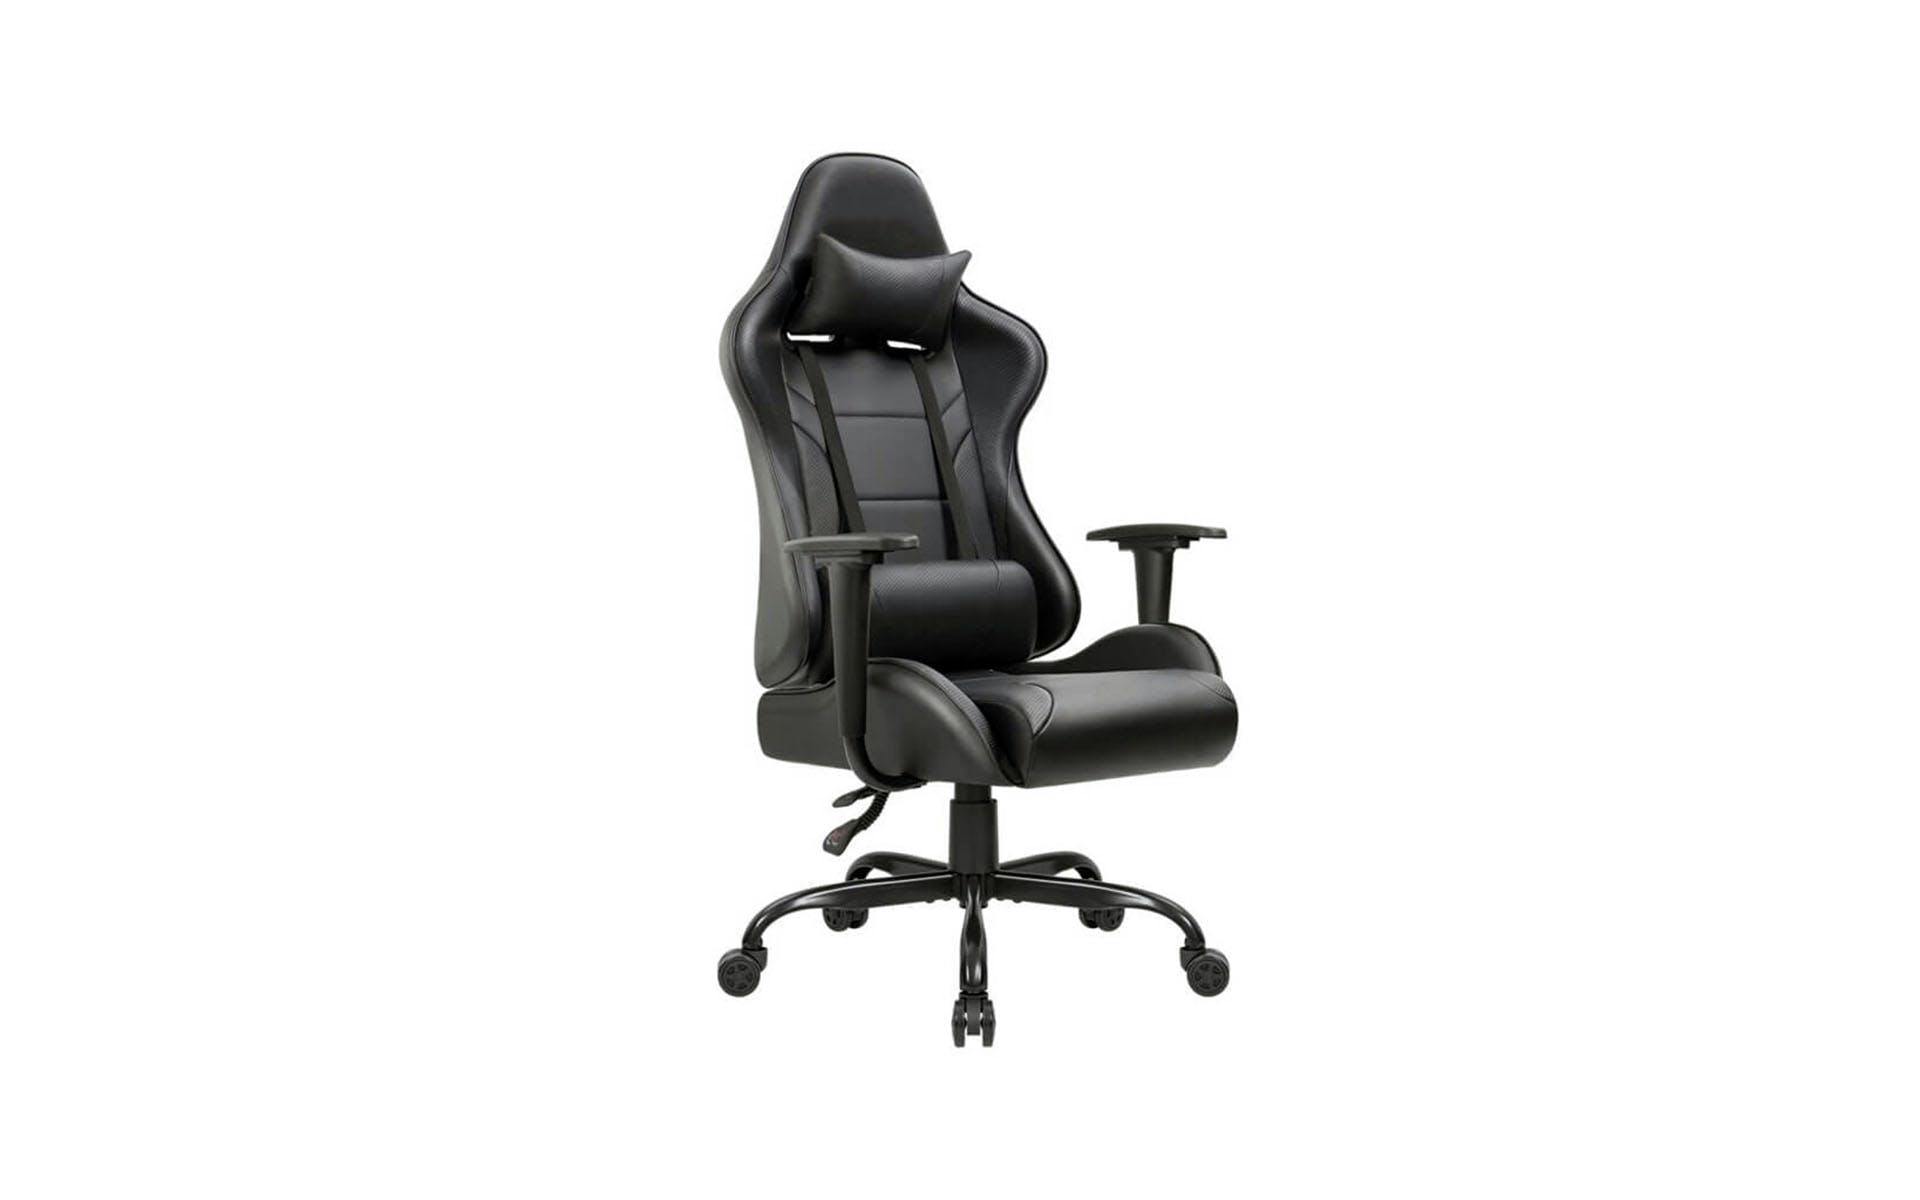 Pechschwarzer Gaming Chair mit breiter Sitzfläche